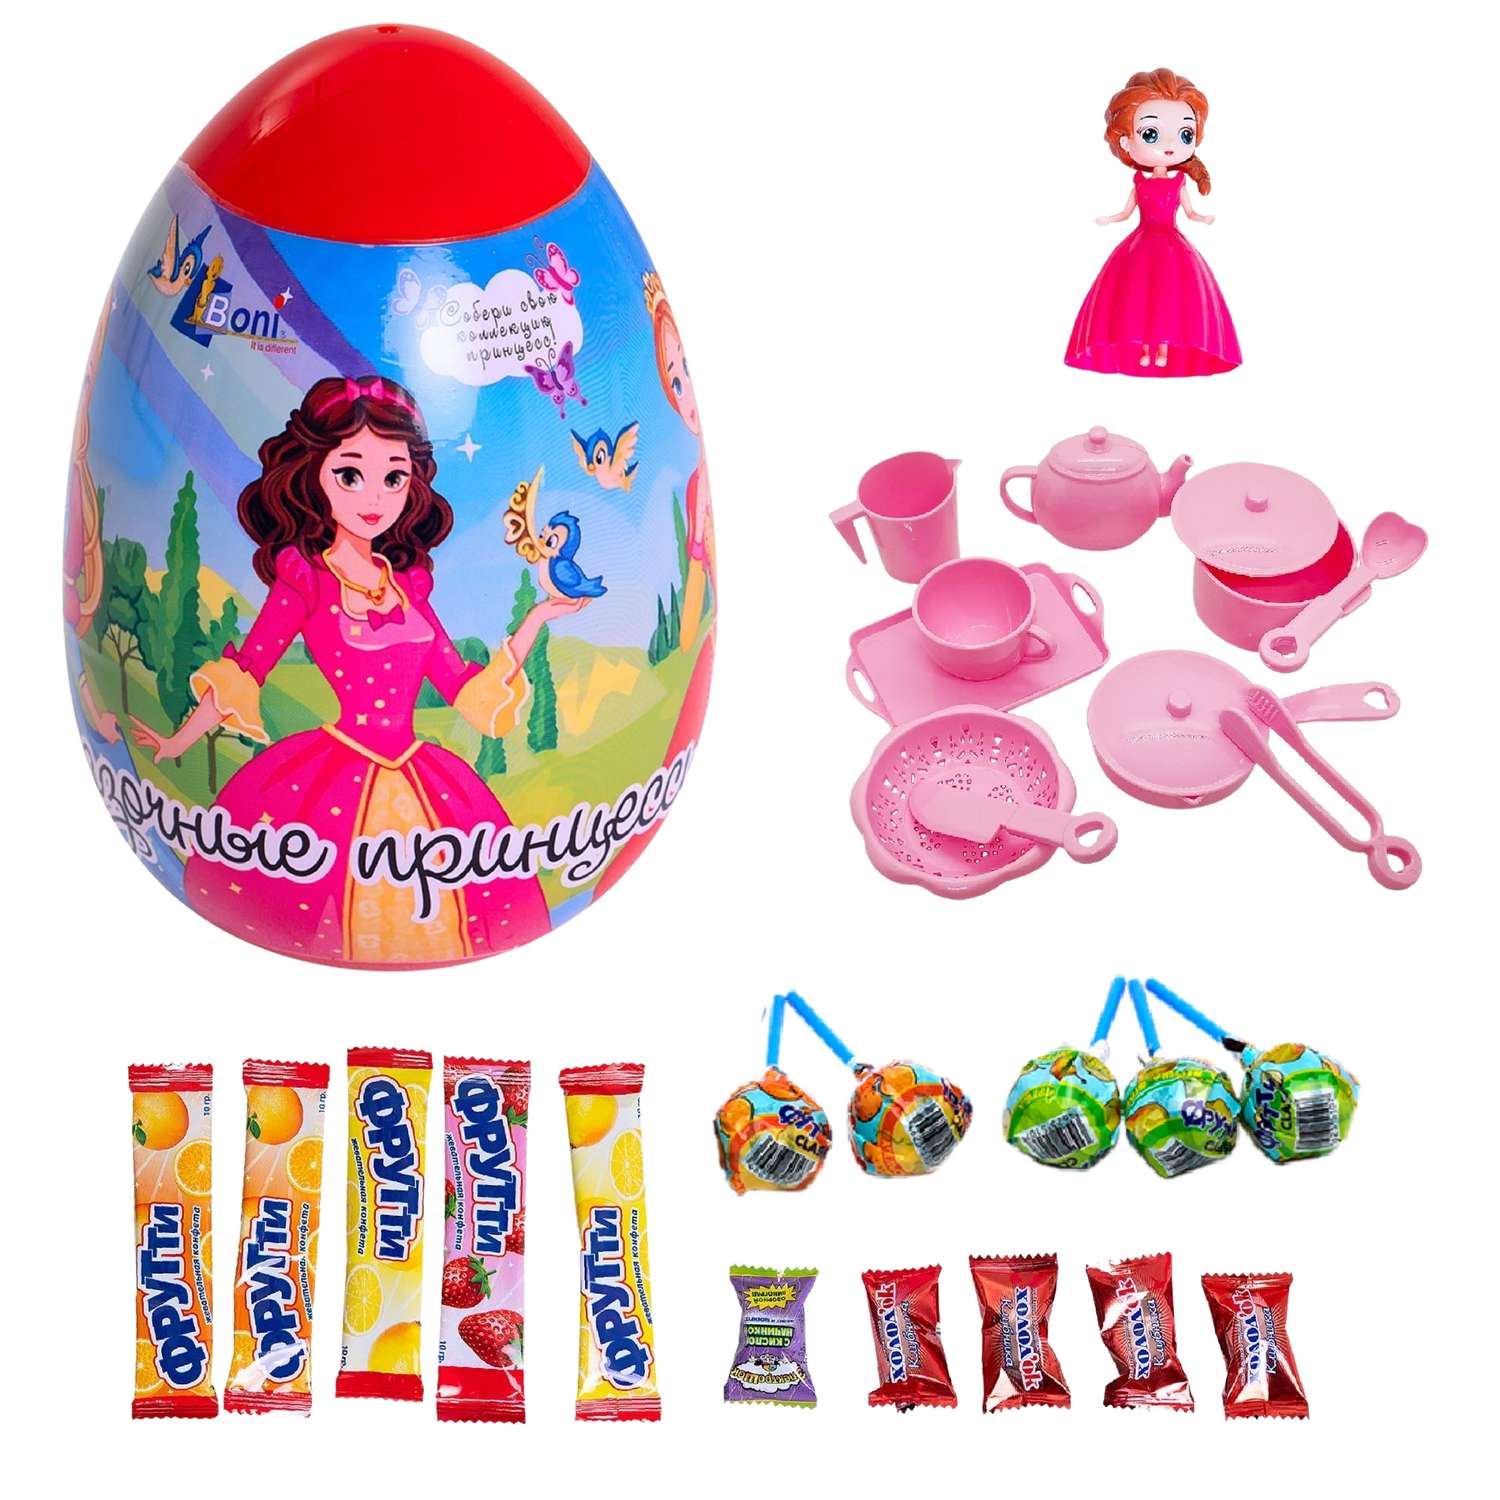 Сюрприз BONI игрушки и сладости для девочки - фото 1